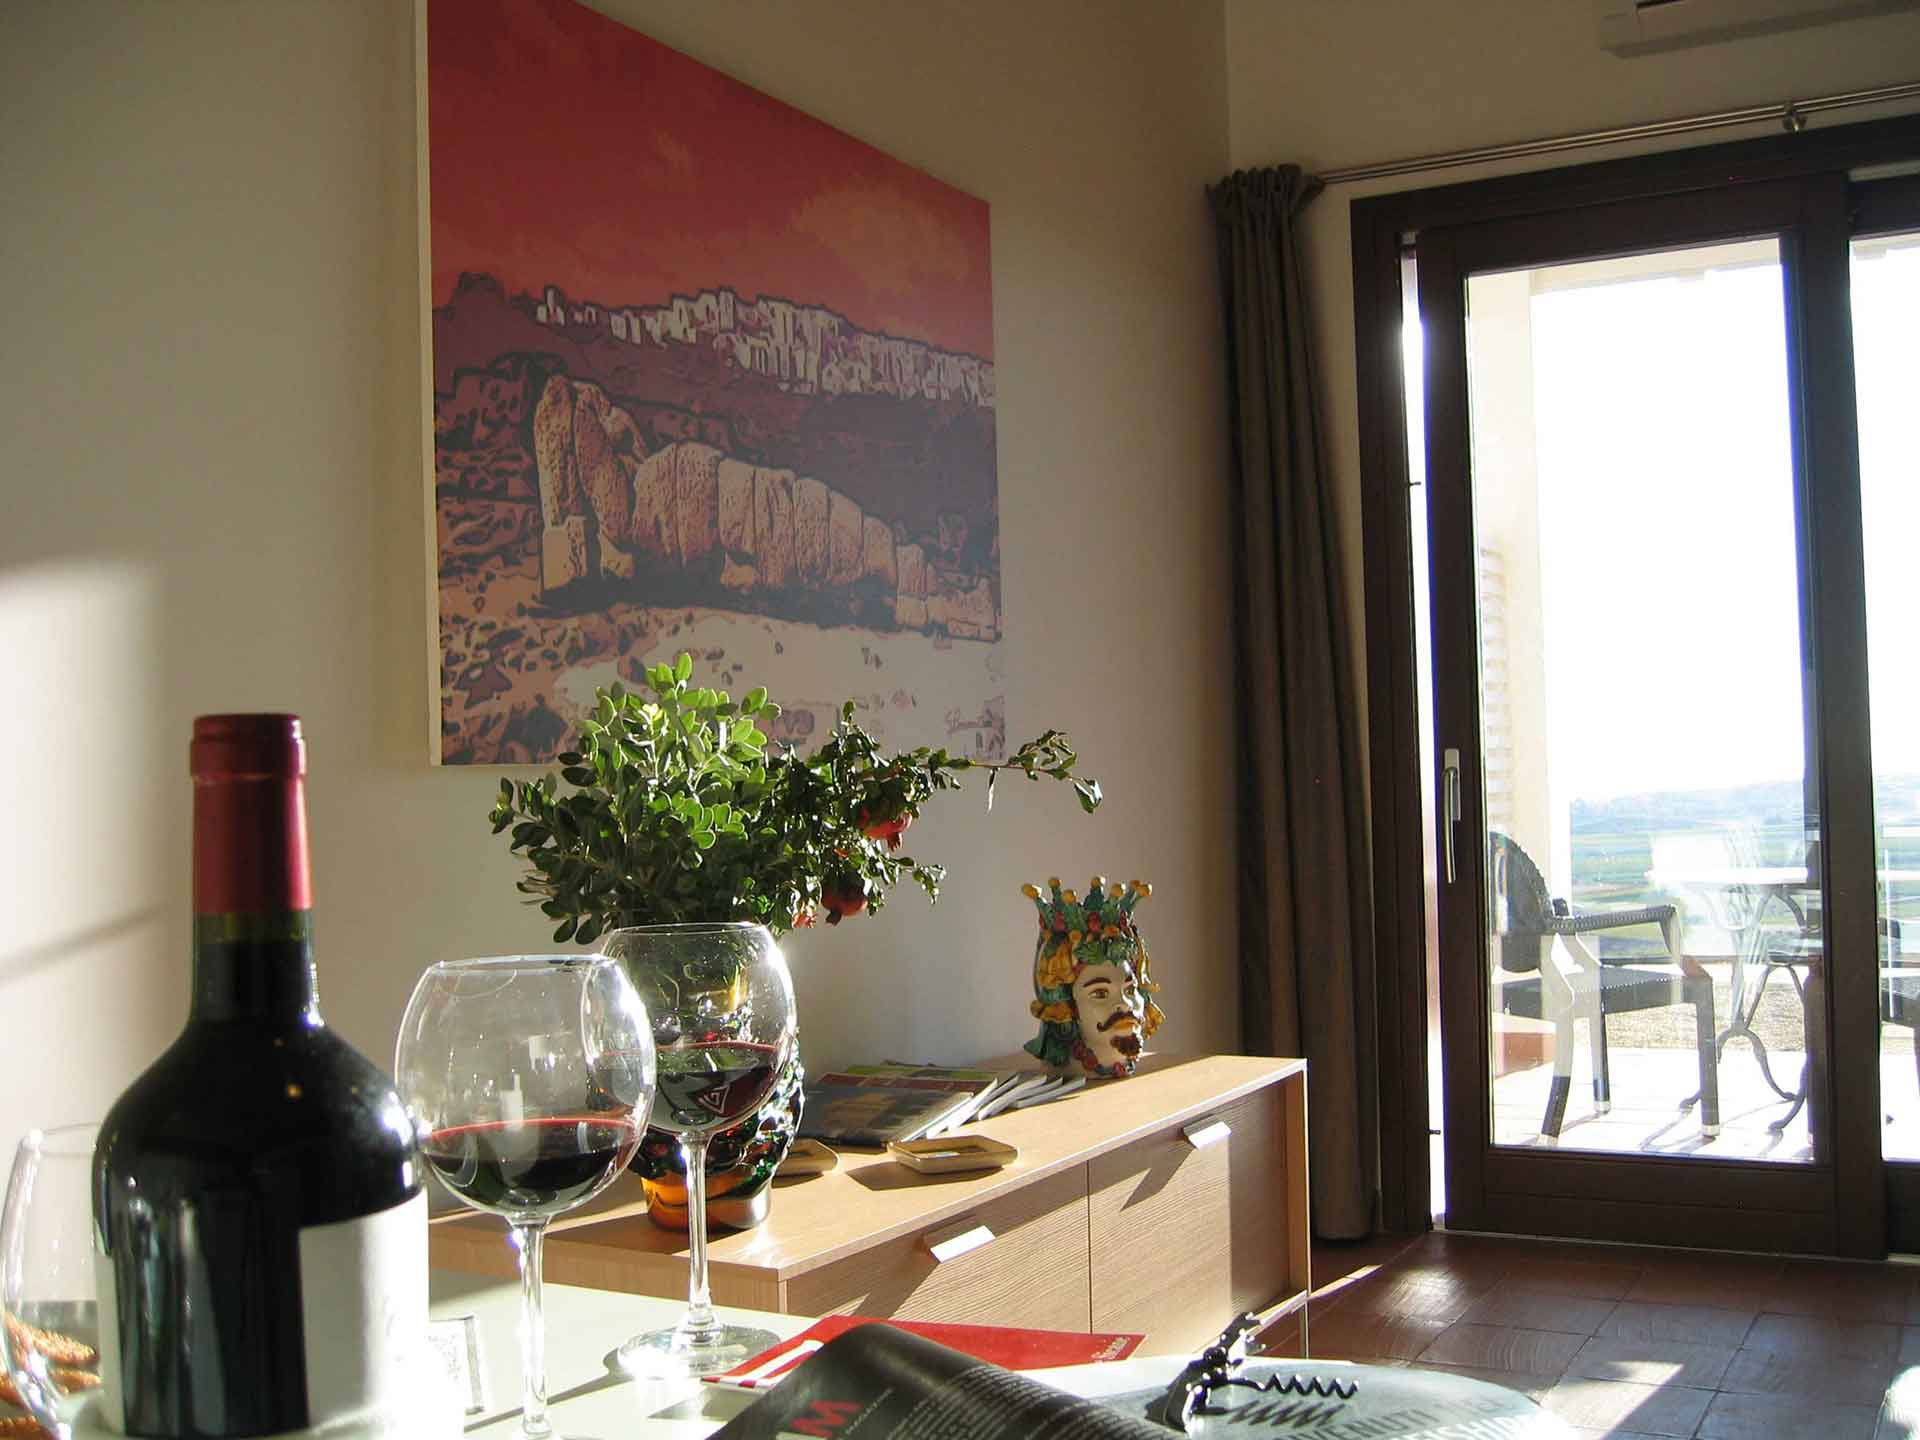 PONTE IMMACOLATA in SICILIA offerte CASA VACANZE viaggi affitto appartamenti villa MENFI MARE BANDIERA BLU e VERDE PEDIATRI